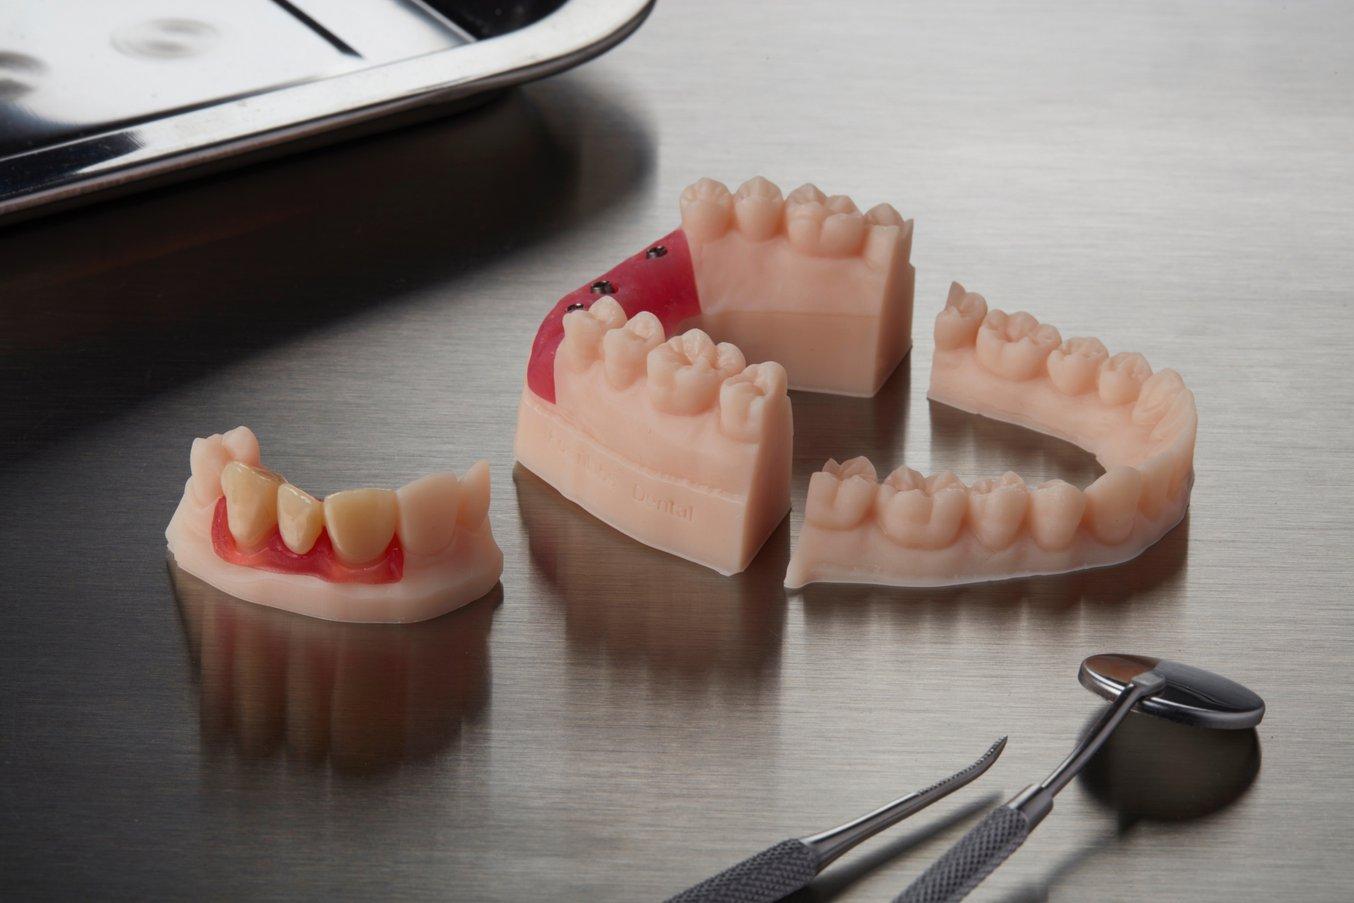 Materiales de impresión 3D de alta precisión para laboratorios y consultas  dentales | Formlabs